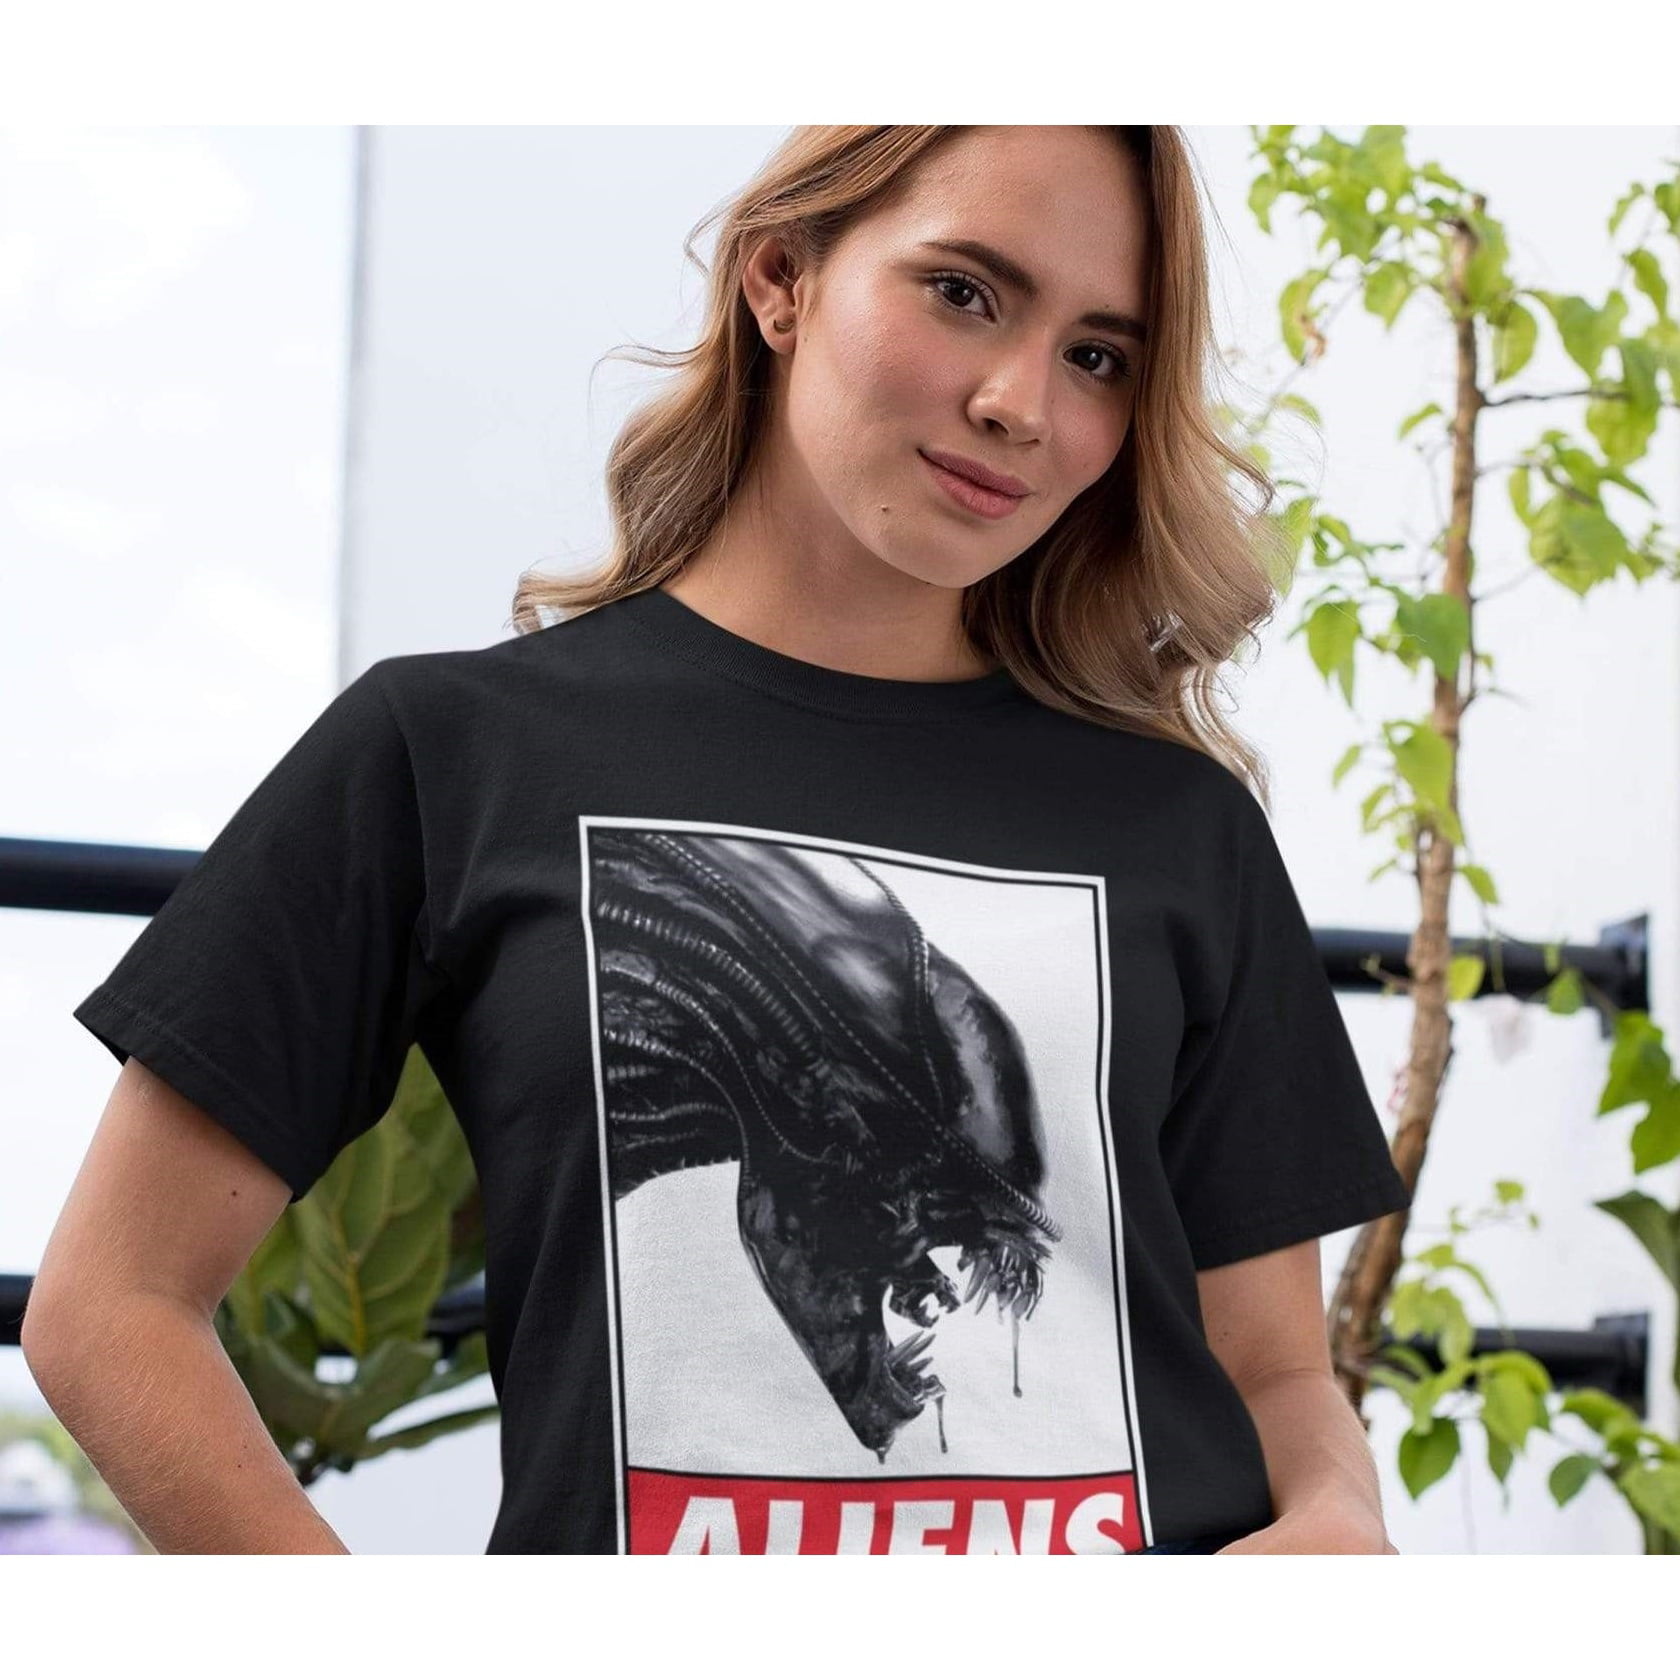 alien t shirt walmart